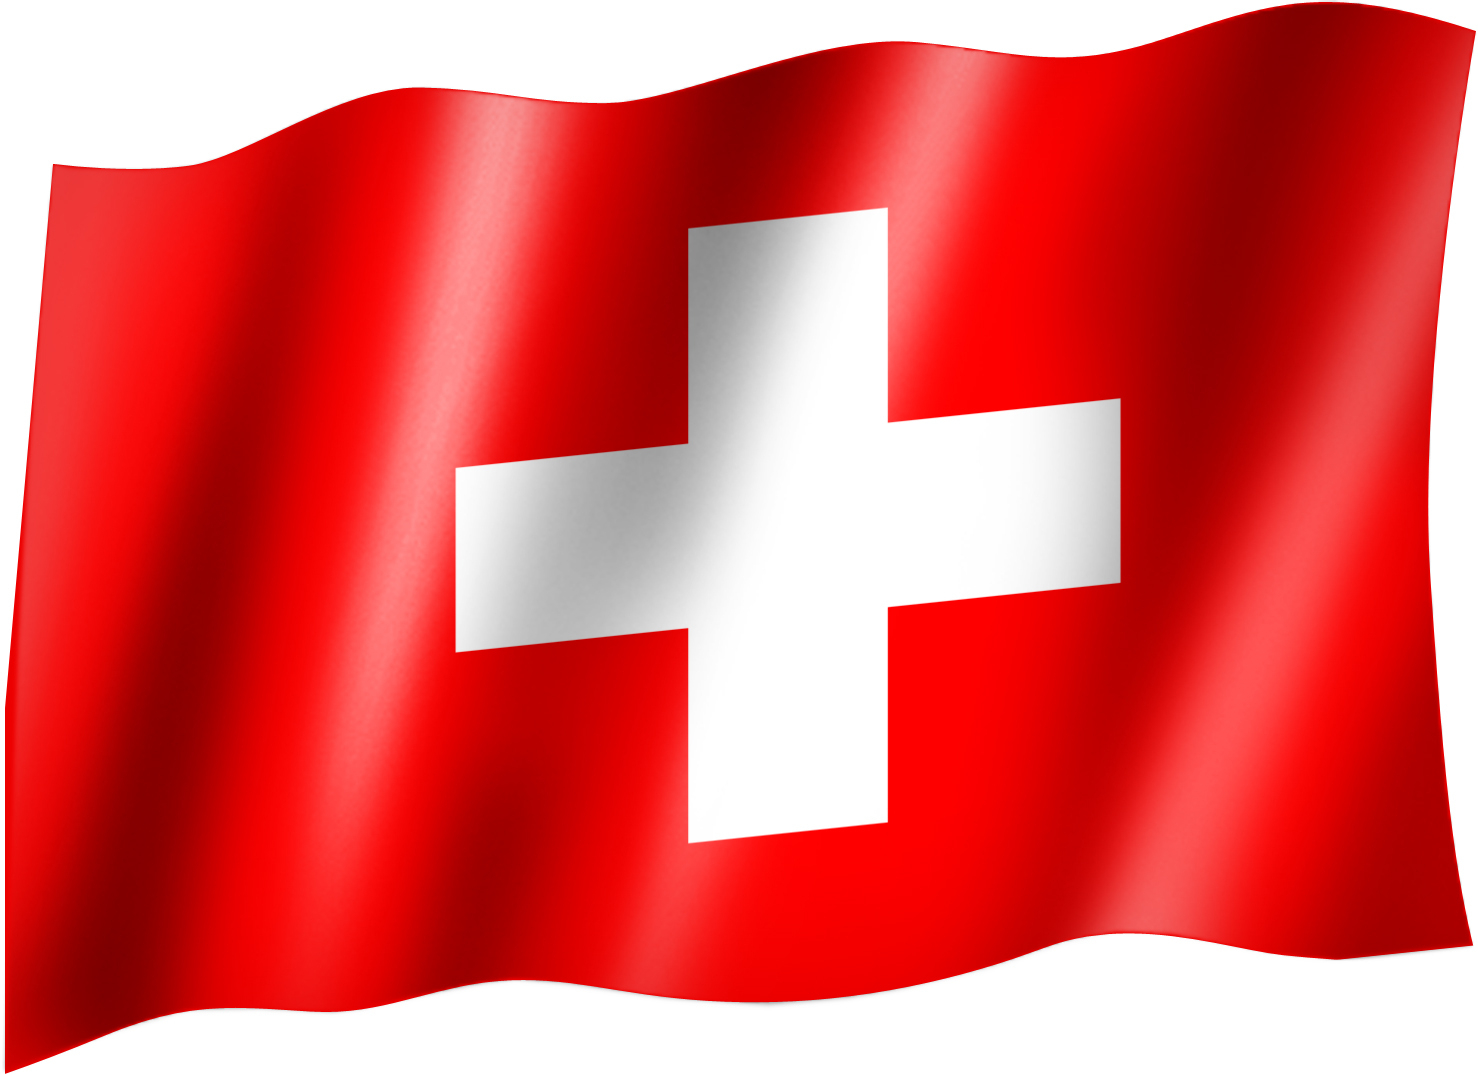 Schweizer Flagge | Blue Whale über Flagge Von Schweiz